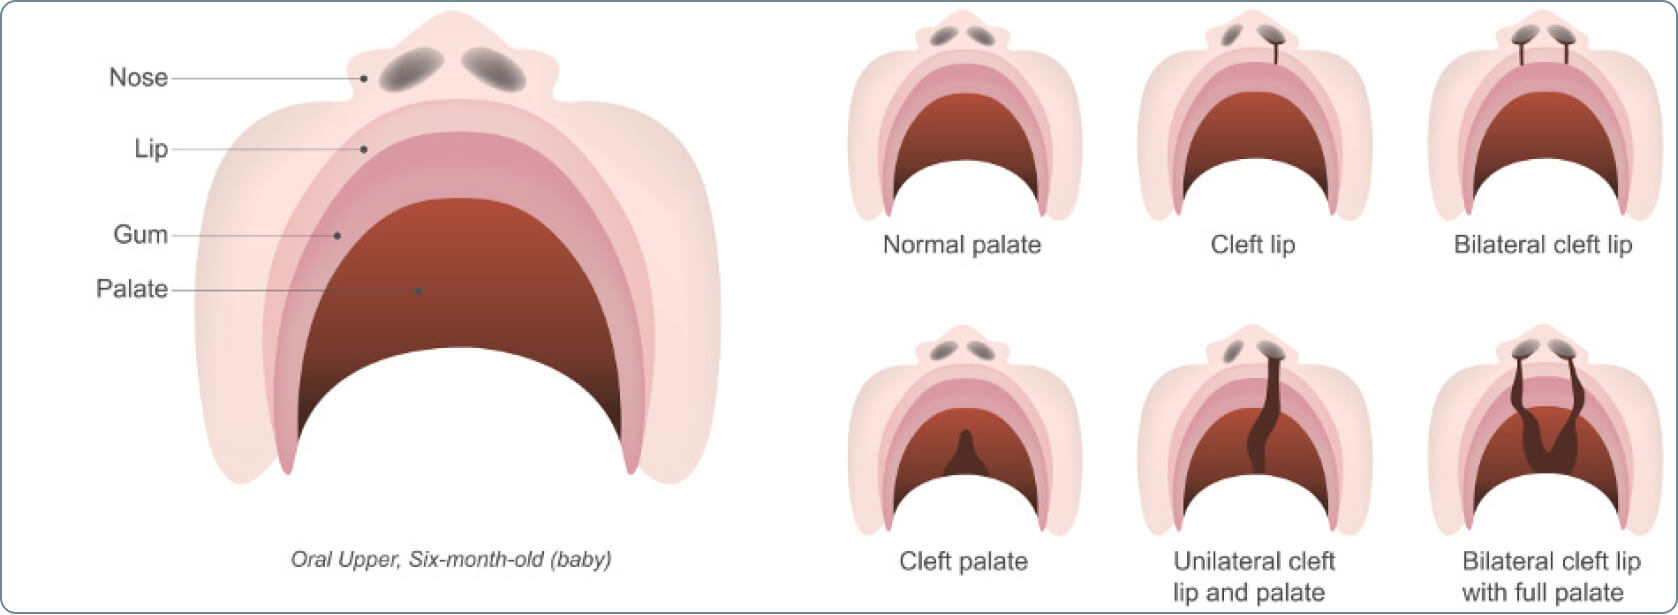 Lippen-Kiefer-Gaumenspalte (LKGS, Hasenscharte) - Was ist unter dem Begriff „uni- und bilateral“ im Zusammenhang mit der Lippen-Kiefer-Gaumenspalte zu verstehen?